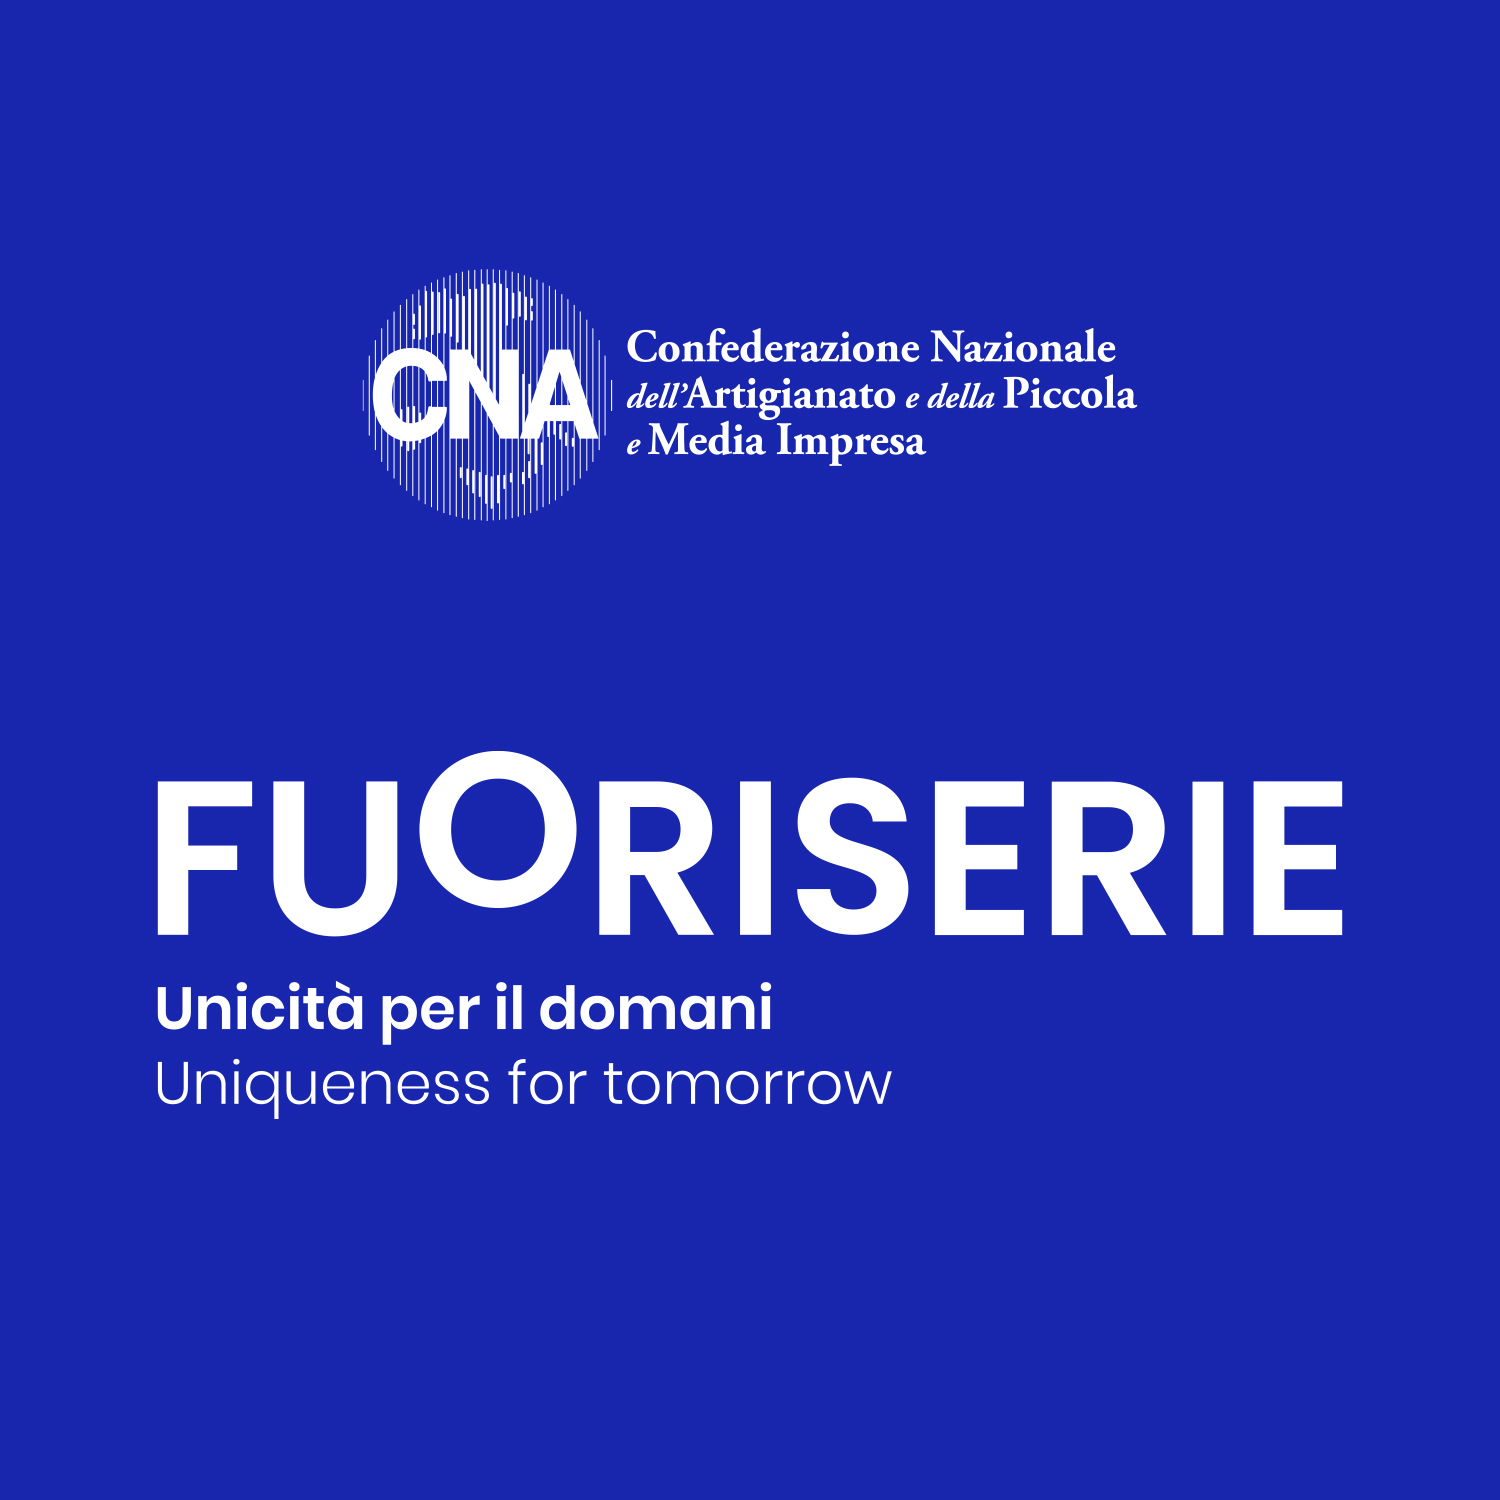 Fuoriserie – Uniqueness for tomorrow